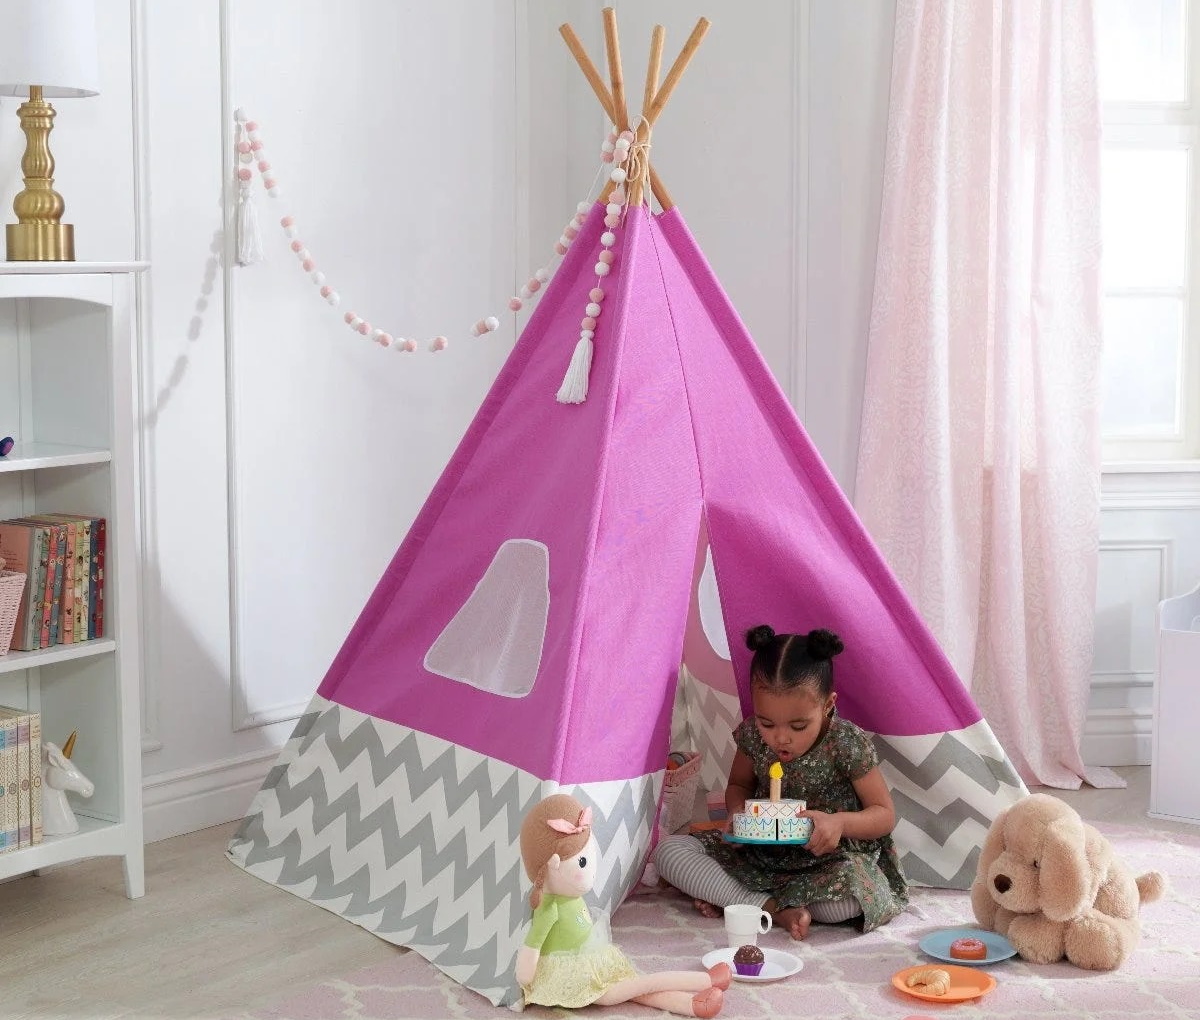 Fabric Pop-Up Triangular Play Tent kidkraft wayfair feature